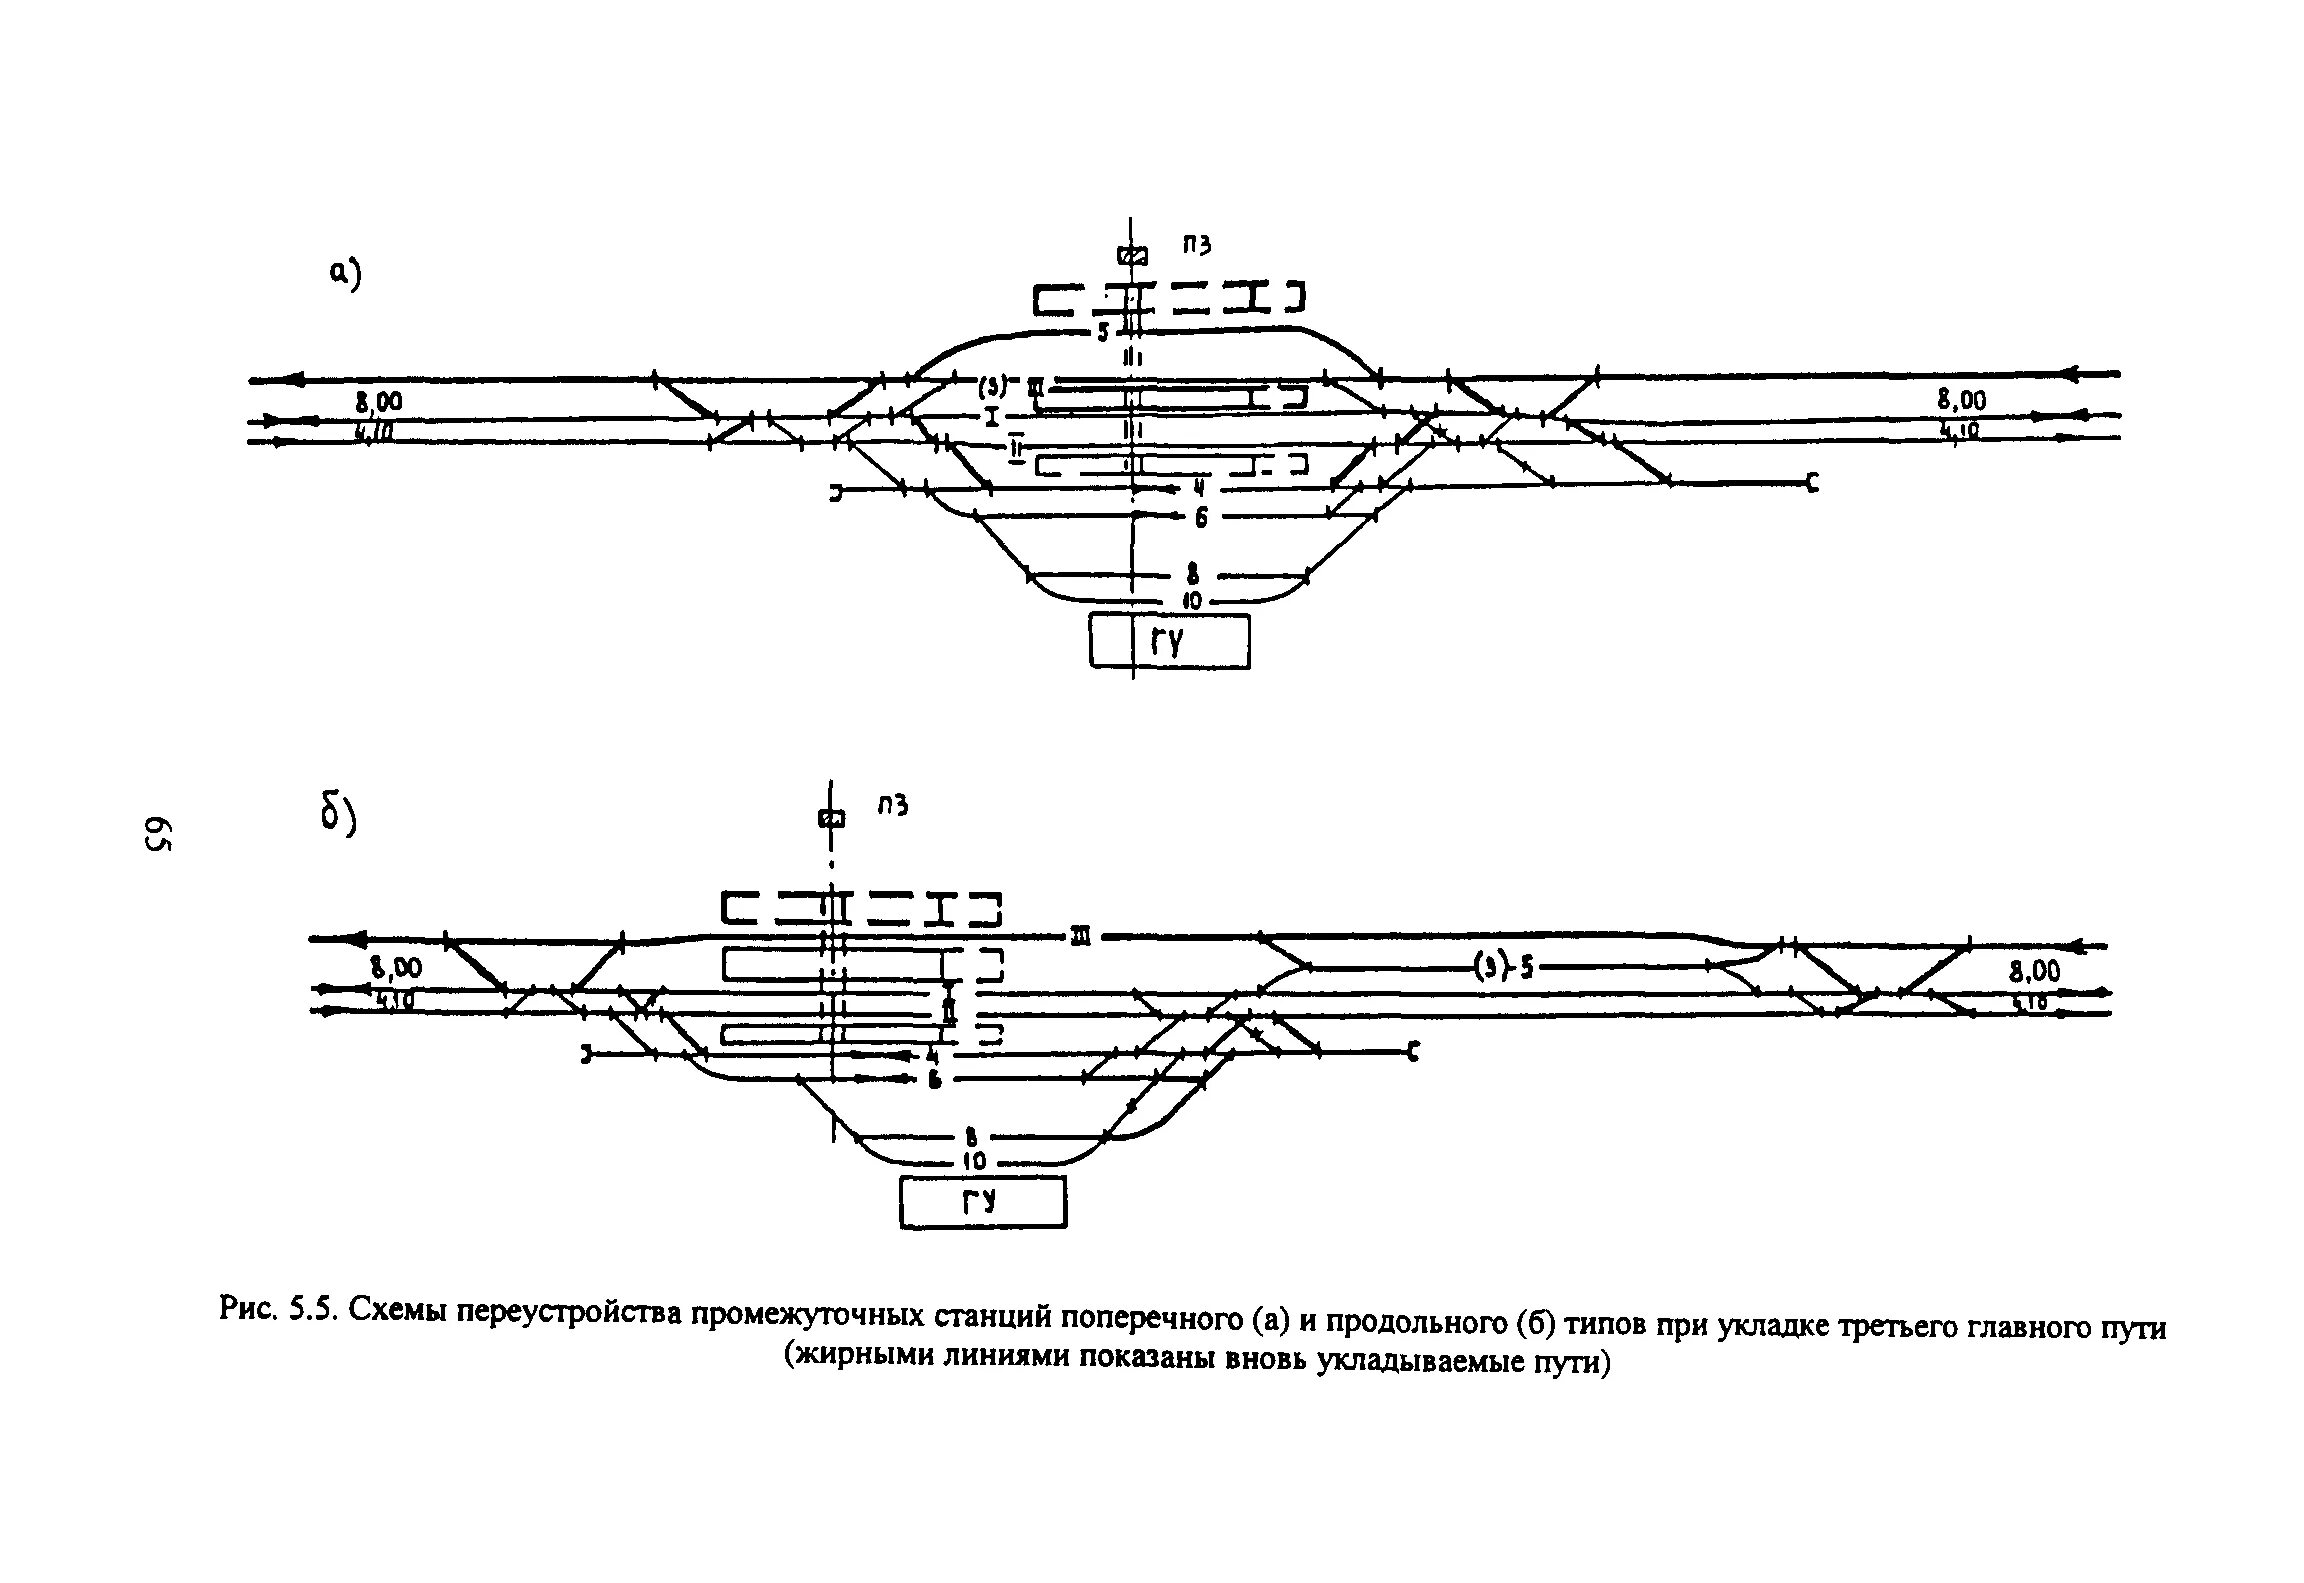 Железные дороги колеи 1520 мм. Полупродольная схема промежуточной станции. Промежуточная станция полупродольного типа. Схема промежуточной станции полупродольного типа со светофорами. Схема промежуточной станции продольного типа на однопутной линии.